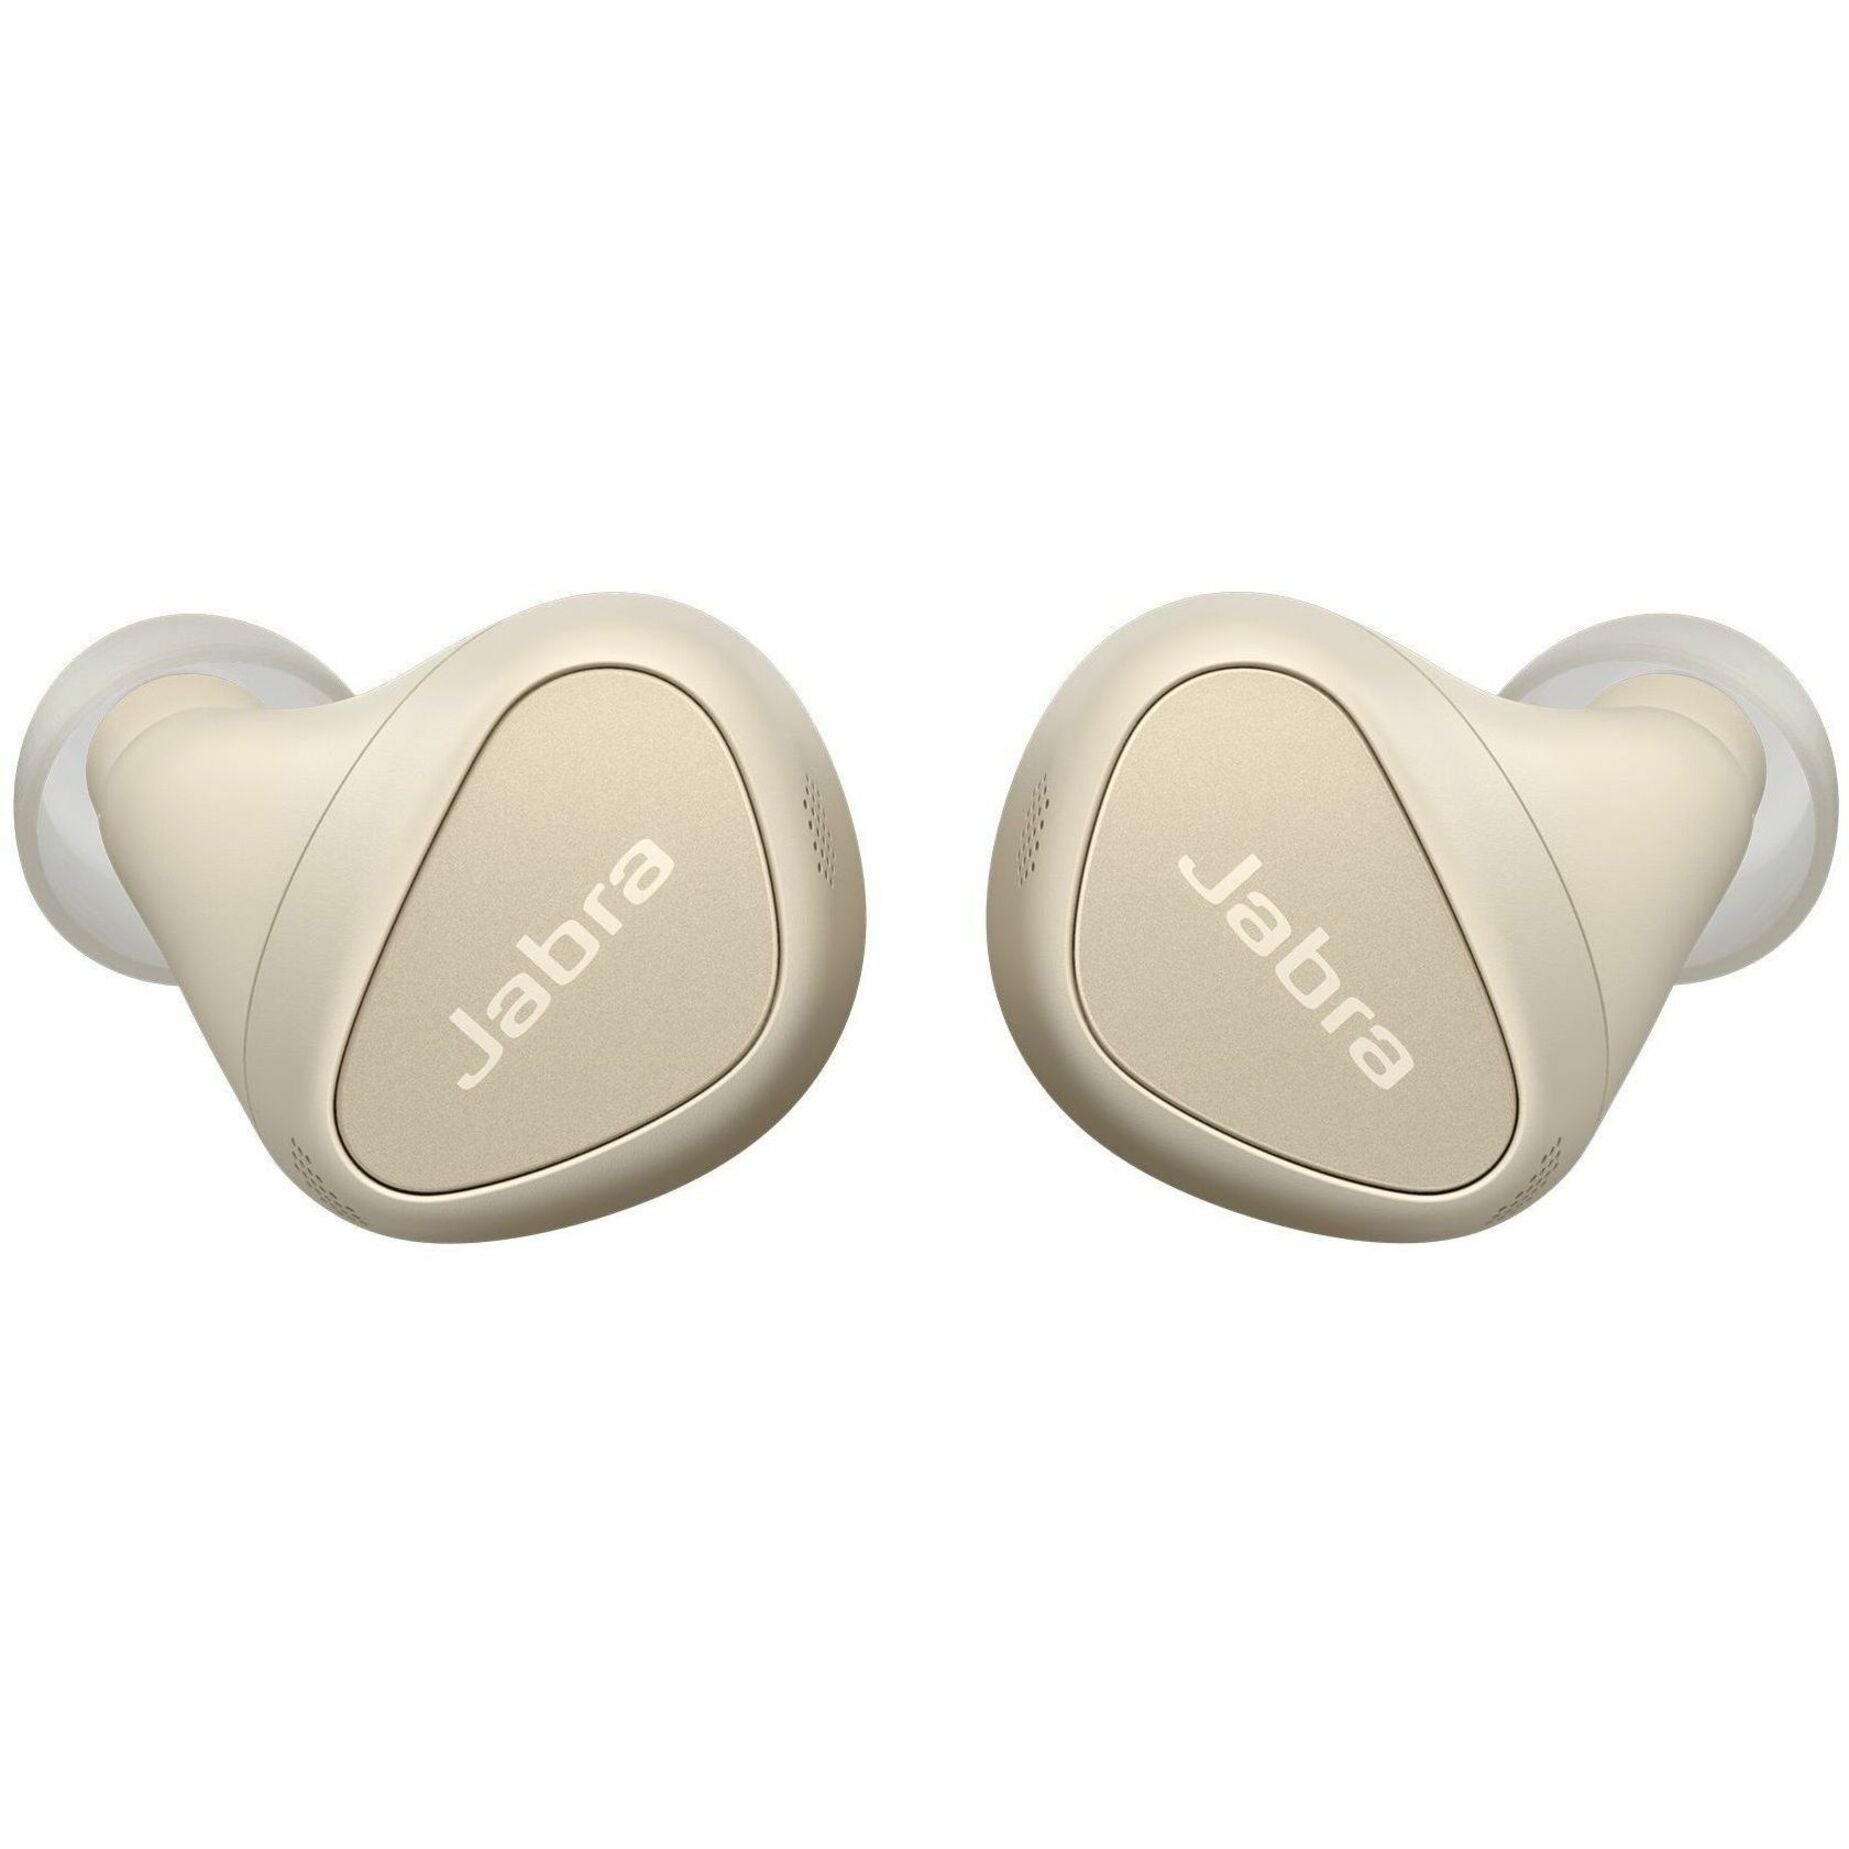 品牌：Jabra 产品名称：耳机 100-99280901-99 精英10，双耳耳塞，附2年保修，内置麦克风，兼容Android/Windows，IP57等级，可充电电池，音量/播放/暂停控制，奶油色